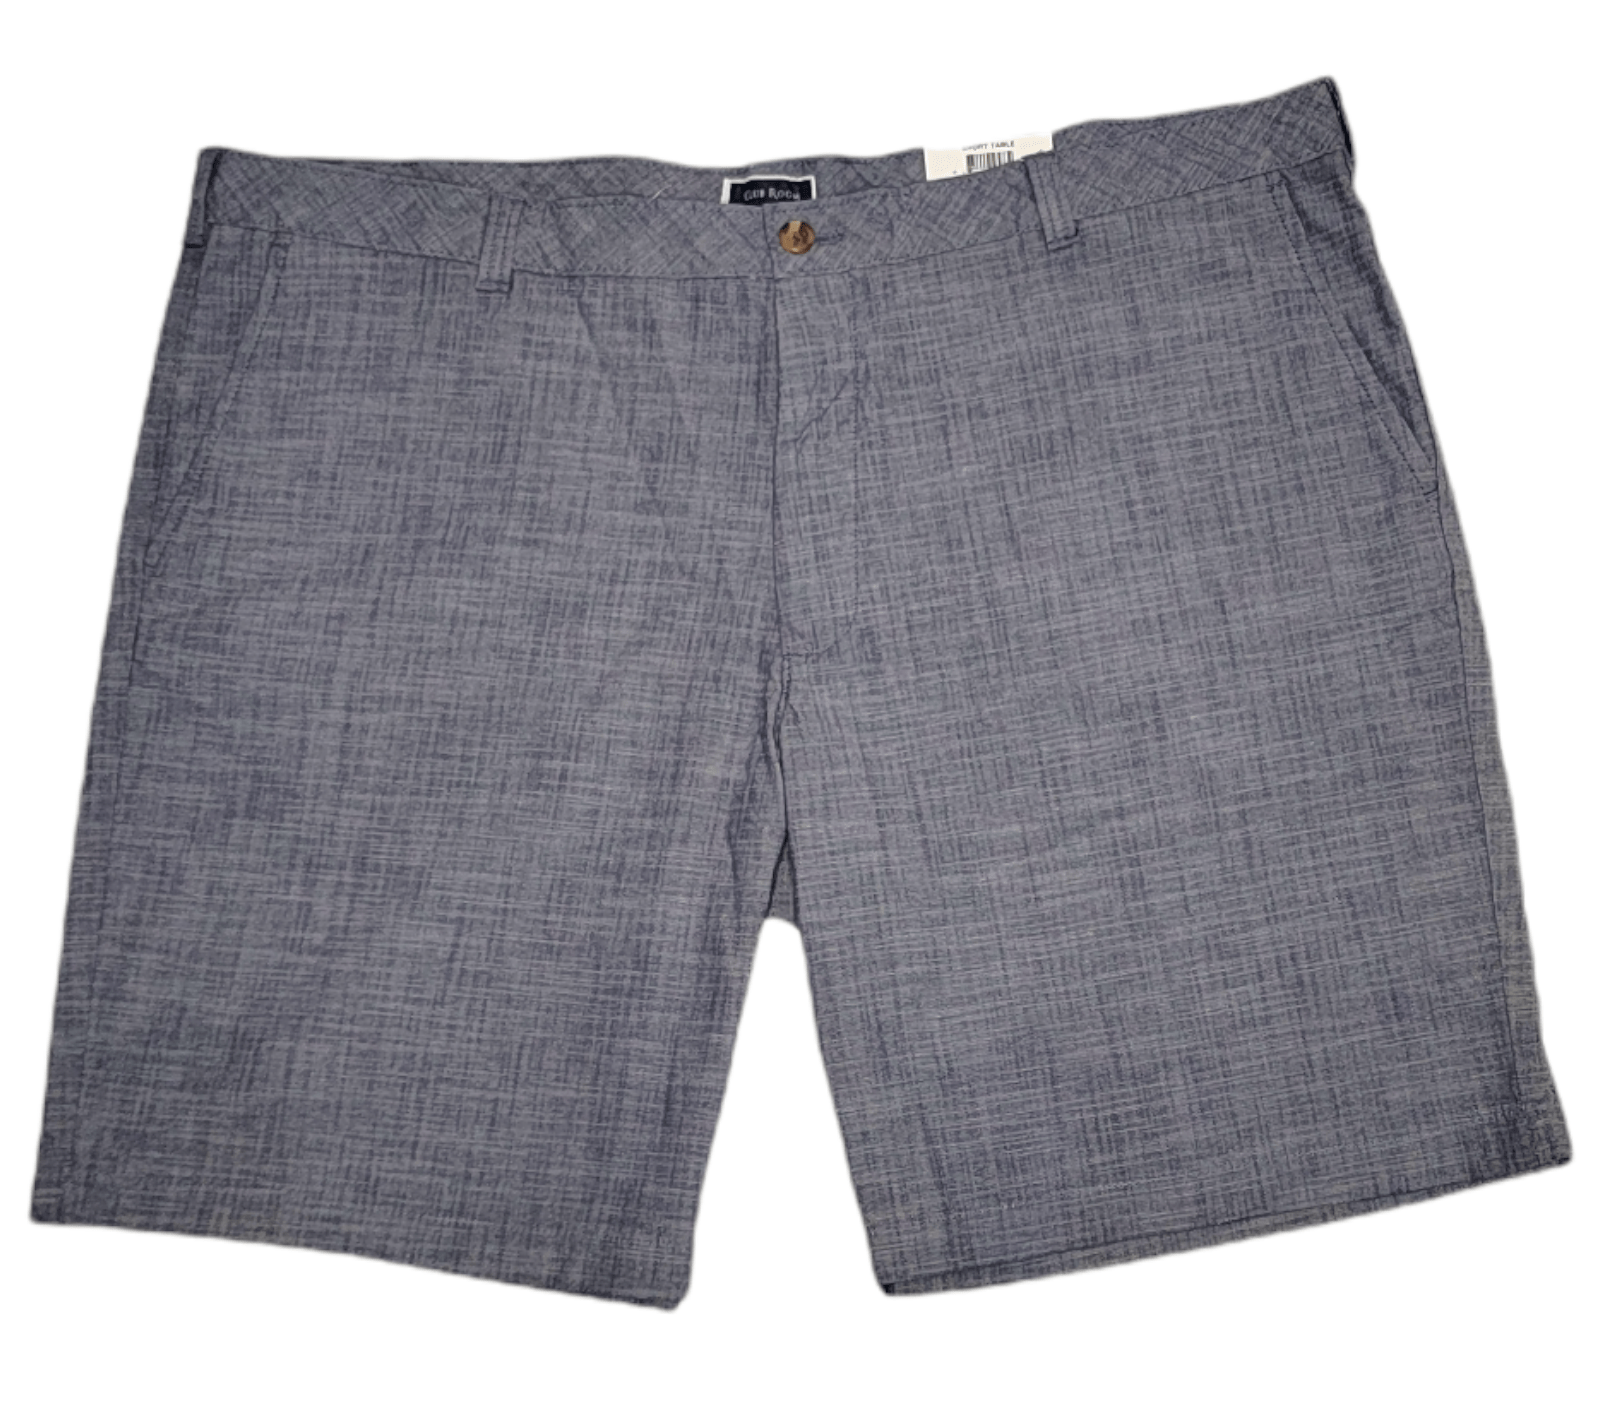 ElOutlet - Men Summer Men Shorts size 44 Men Shorts - Grey